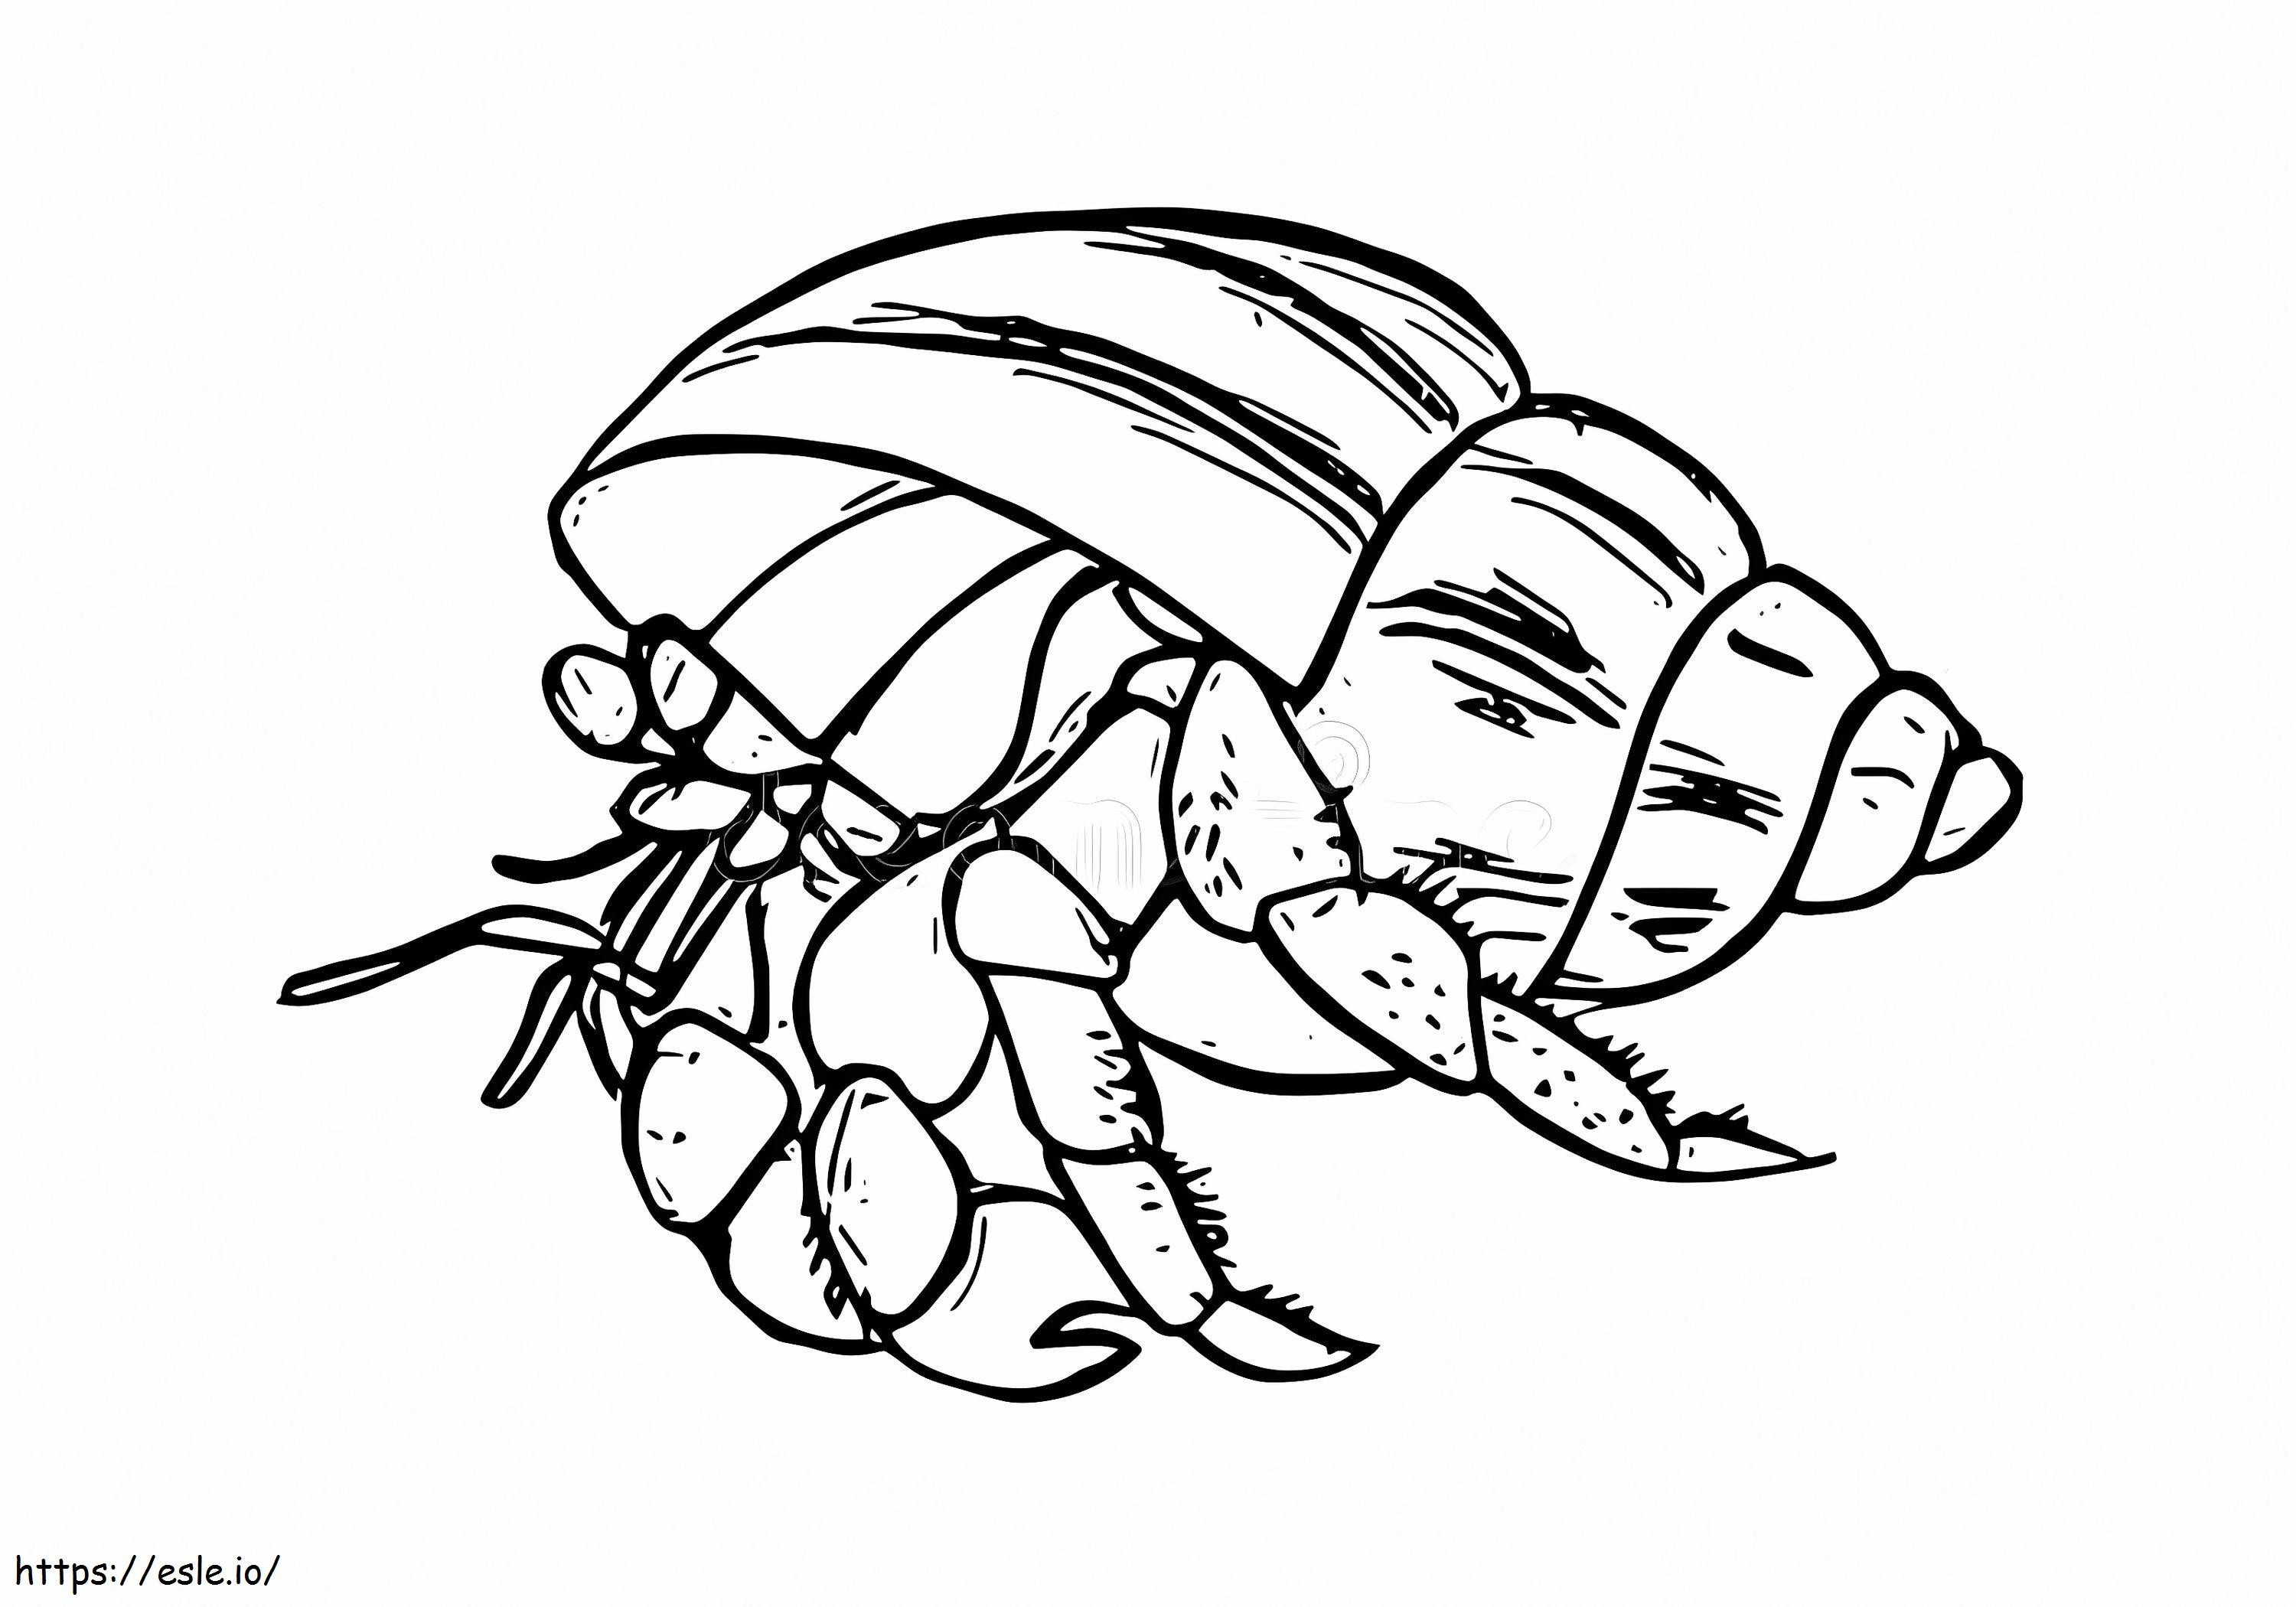 Ocean Hermit Crab coloring page